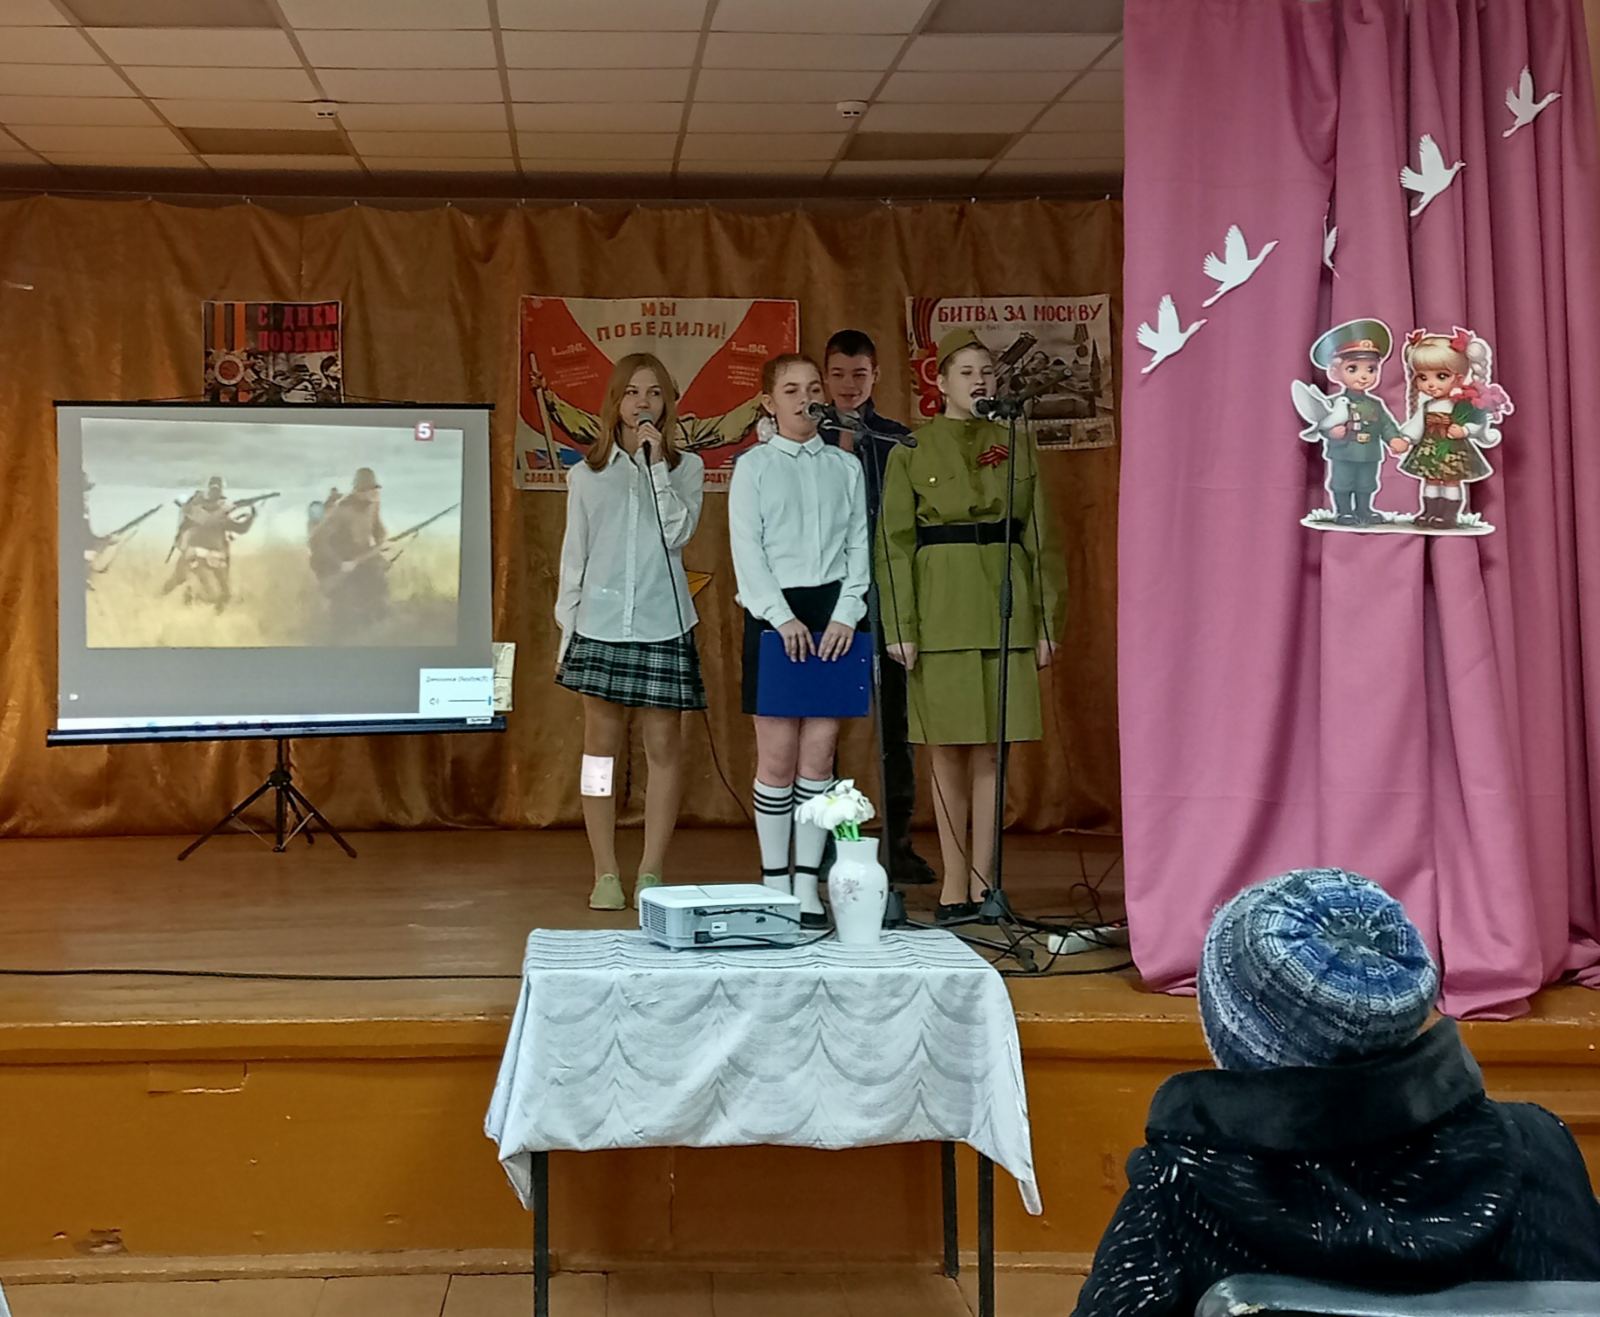 Клочковский ДК приветливо распахнул свои двери, почетным гостям, Детям войны, жителям, детям деревни Клочково

